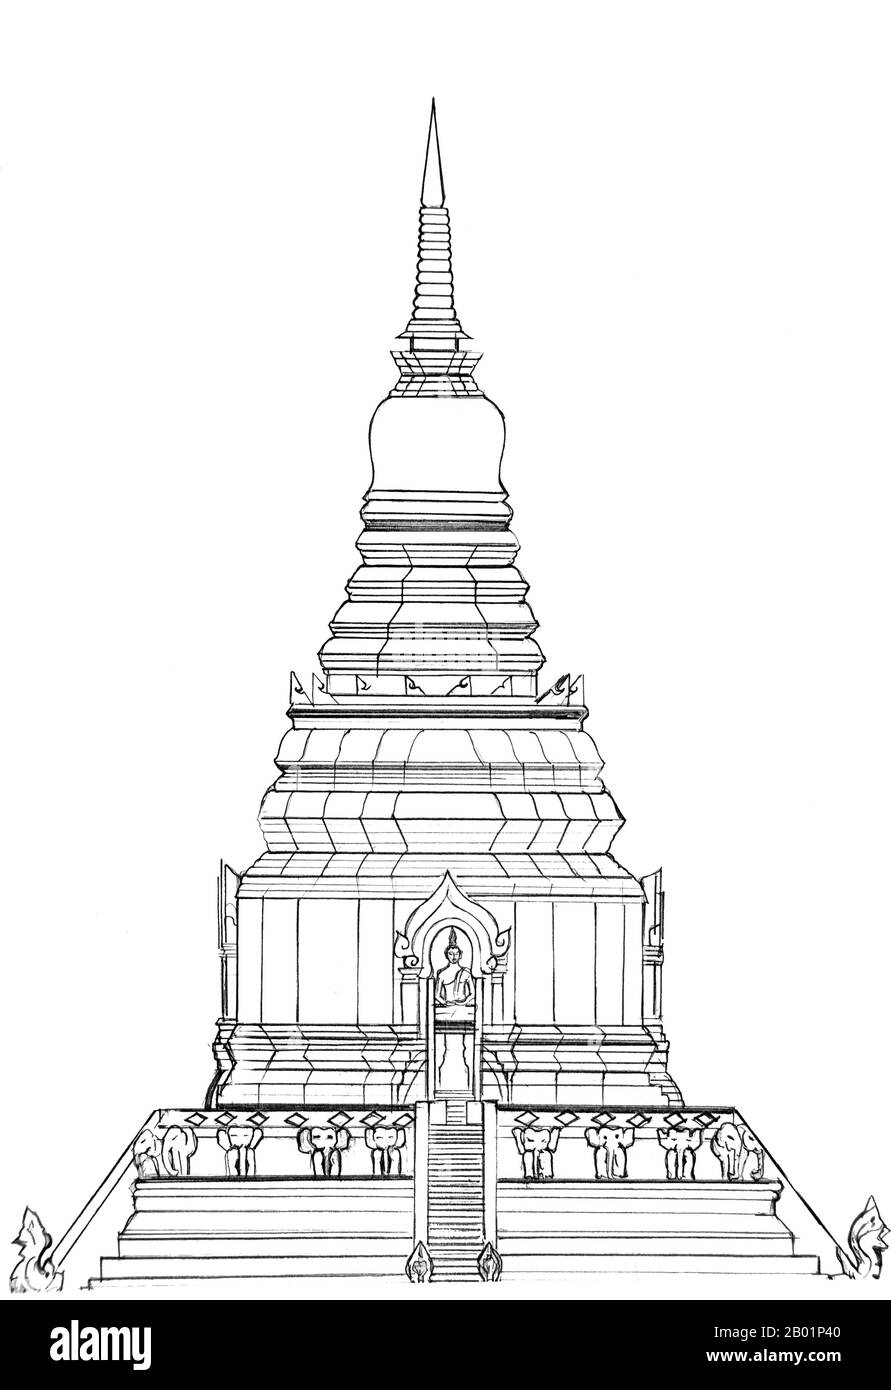 Thailand: Architektonische Zeichnung der vermuteten Originalform von Chiang Mai Chedi Luang vor dem Erdbeben von 1545. Blick auf die Ostseite, vom Haupteingang aus gesehen. Wat Chedi Luang übersetzt wörtlich aus dem Thailändischen als „Kloster der Großen Stupa“. Der Bau des Tempels begann Ende des 14. Jahrhunderts, als das Königreich Lan Na in seiner Blütezeit war. König Saen Muang Ma (1385–1401) beabsichtigte, hier eine große Reliquie zu beherbergen, um die Asche seines Vaters, König Ku Na (1355–1385), zu verwahren. Heute ist es der Ort der Lak Muang oder Stadtsäule. Stockfoto